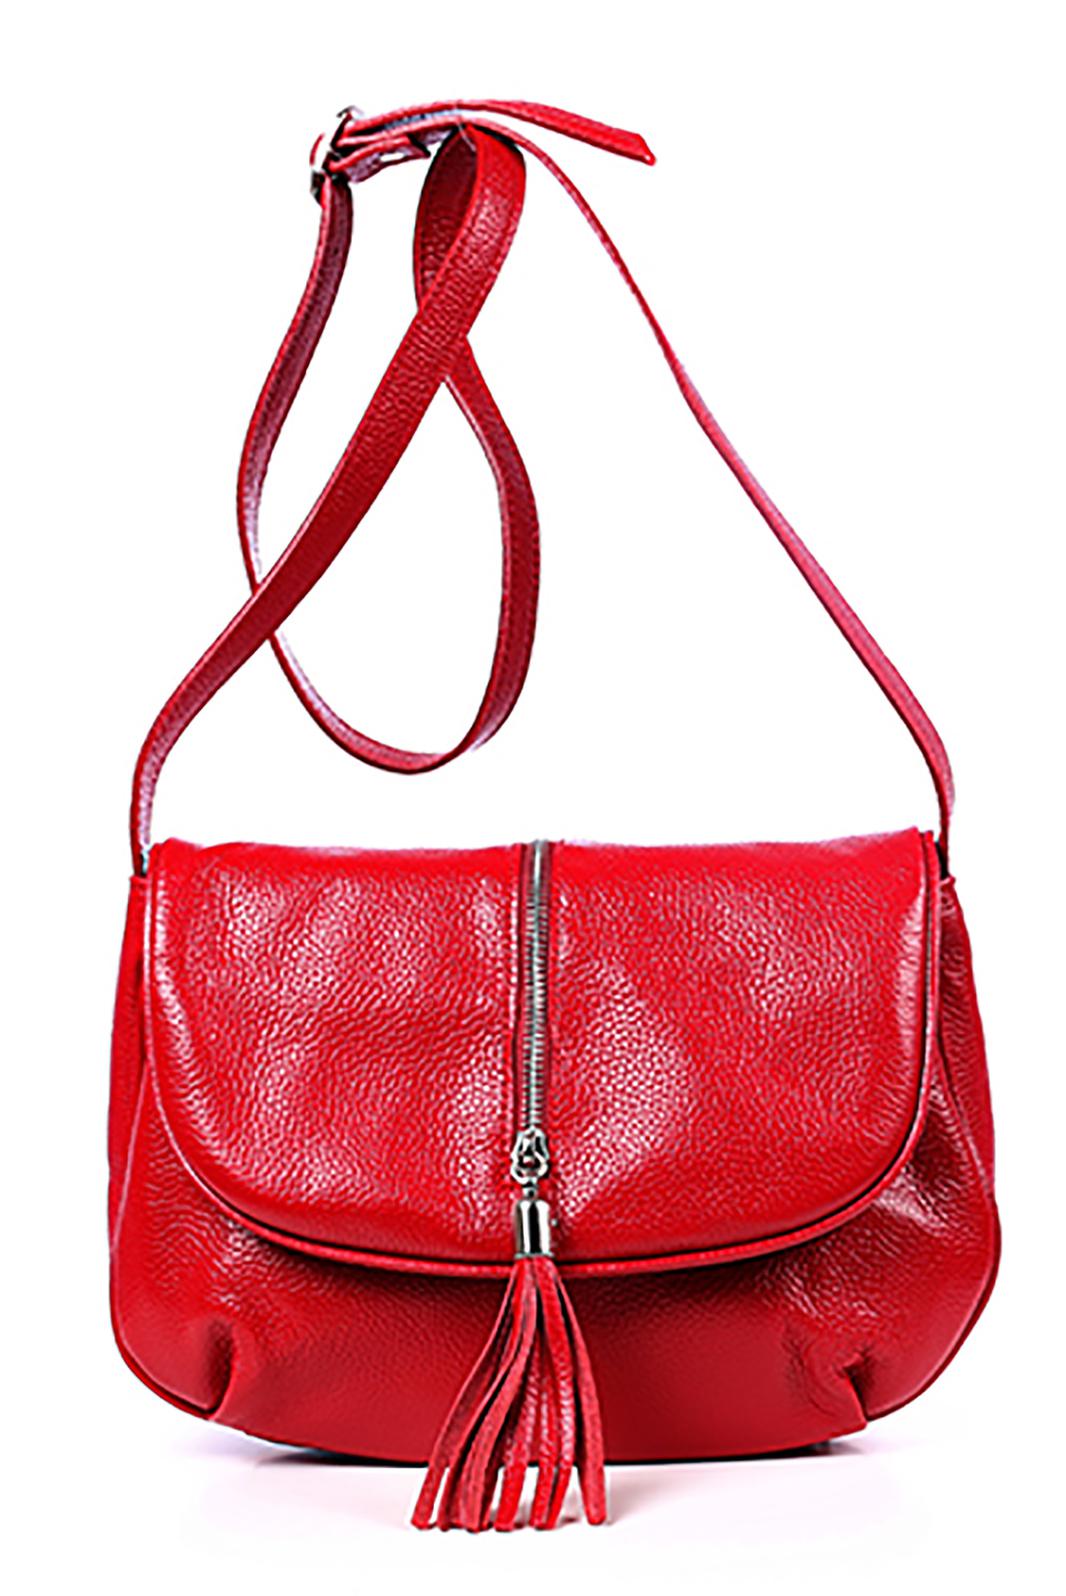 Купить сумку беларусь. Сумки галантея. Красная сумка галантея. Сумки галантея натуральная кожа. Рюкзак Galanteya 319 (красный).